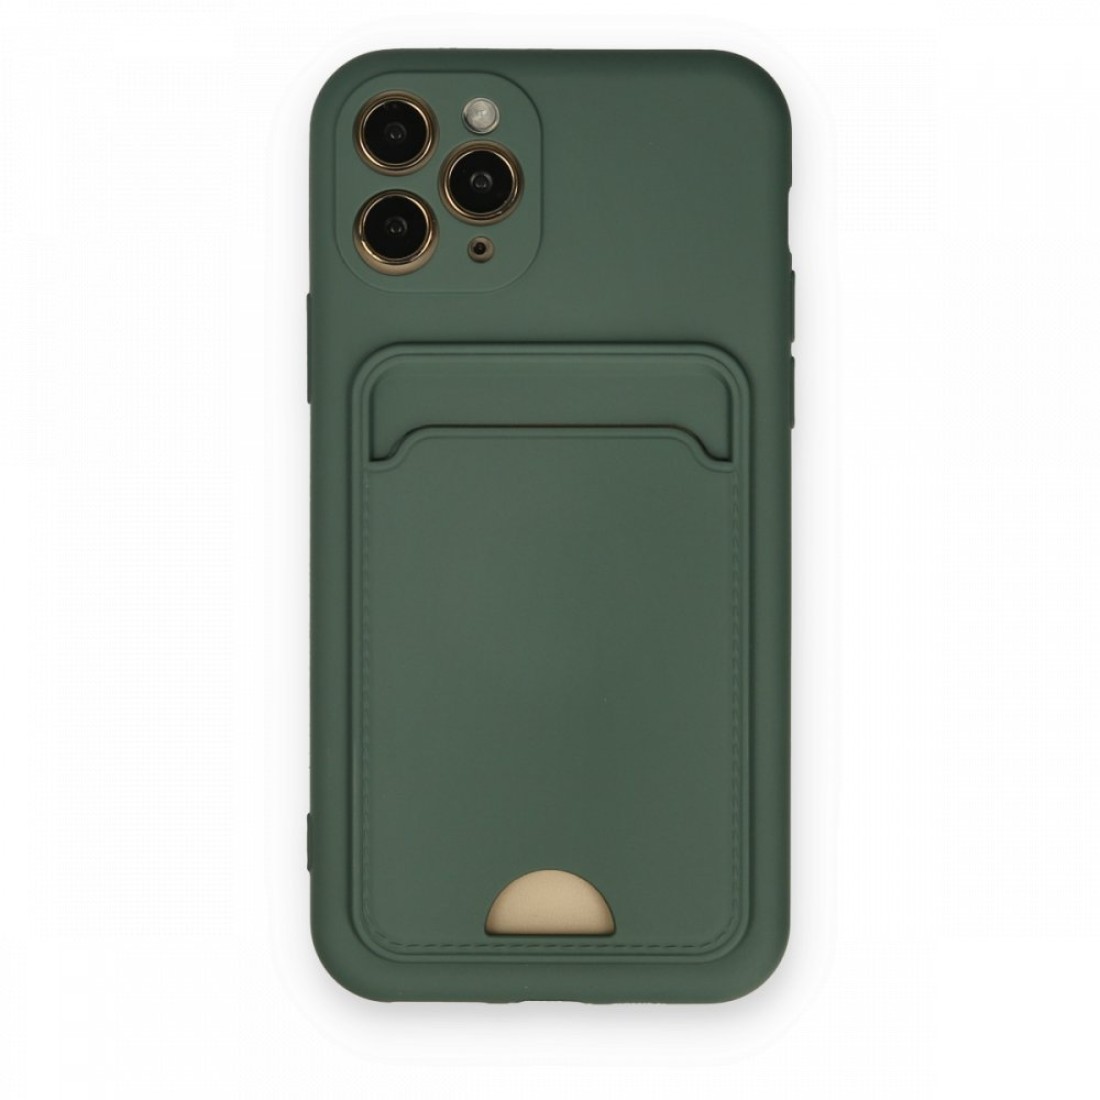 Apple iPhone 11 Pro Kılıf Kelvin Kartvizitli Silikon - Koyu Yeşil